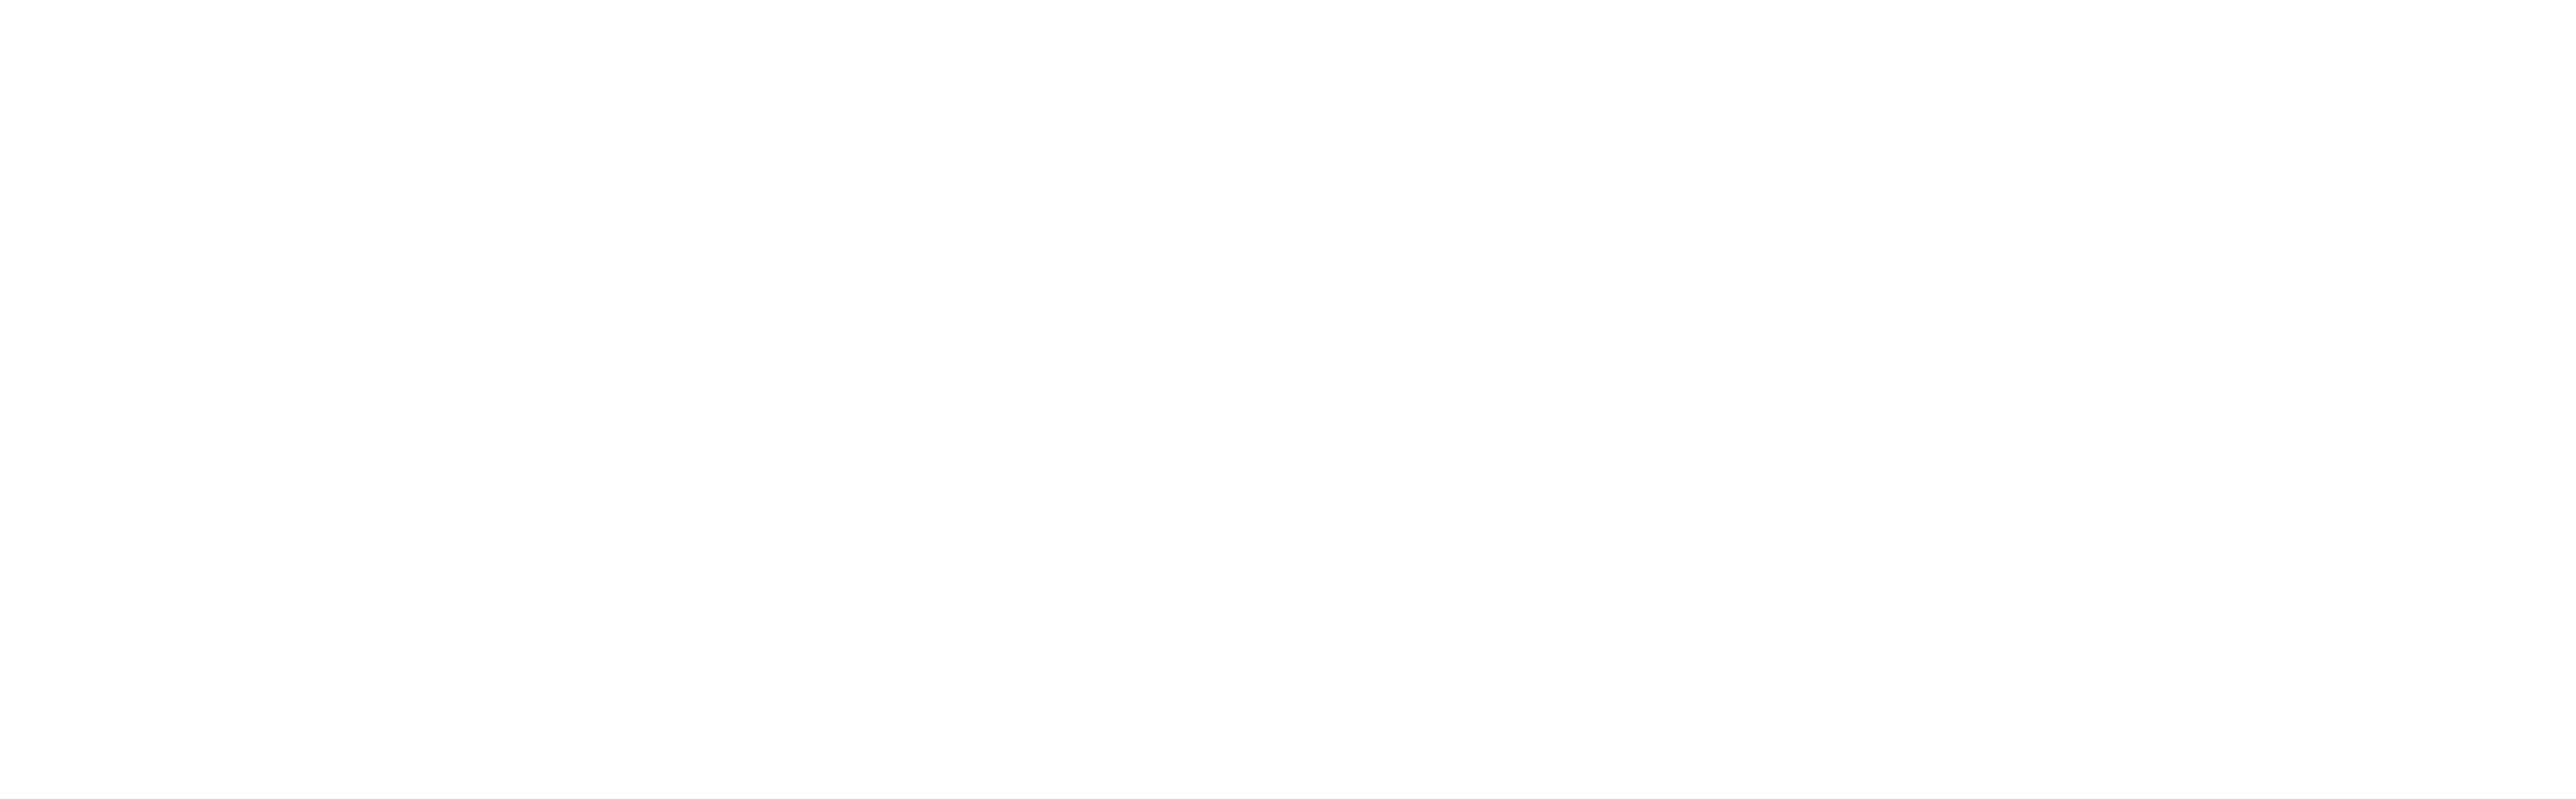 Logo Bucher weiß transparent